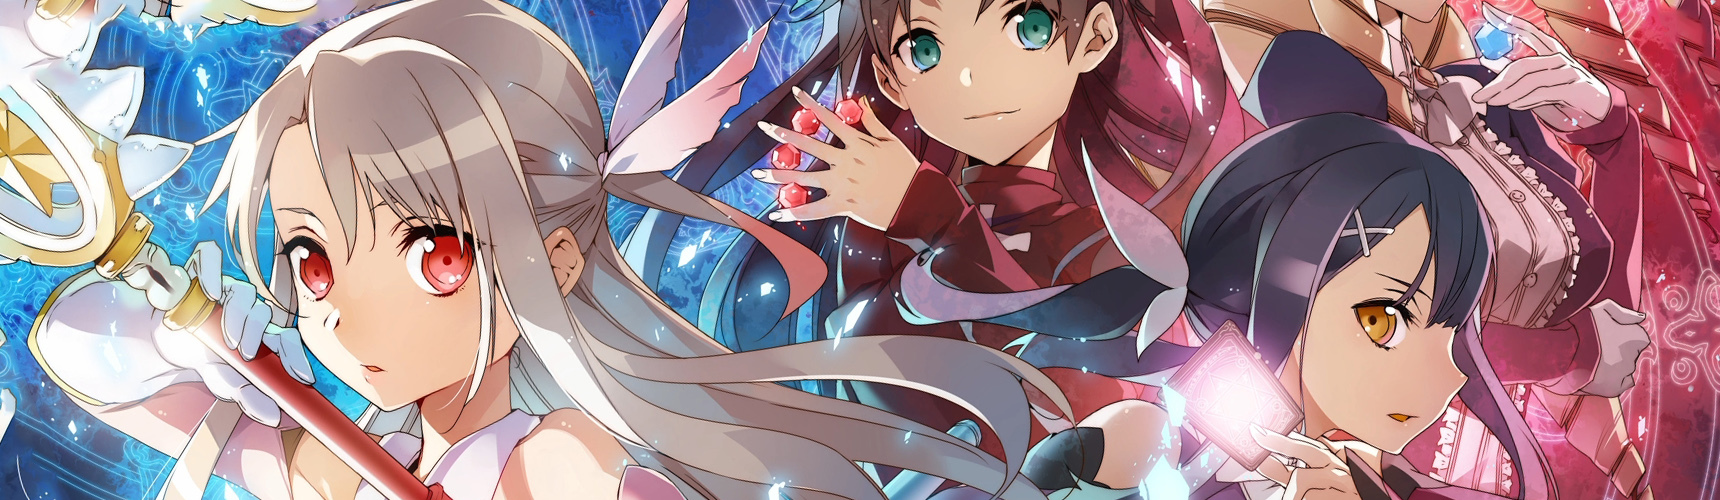 Banner for Fate/kaleid liner Prisma☆Illya